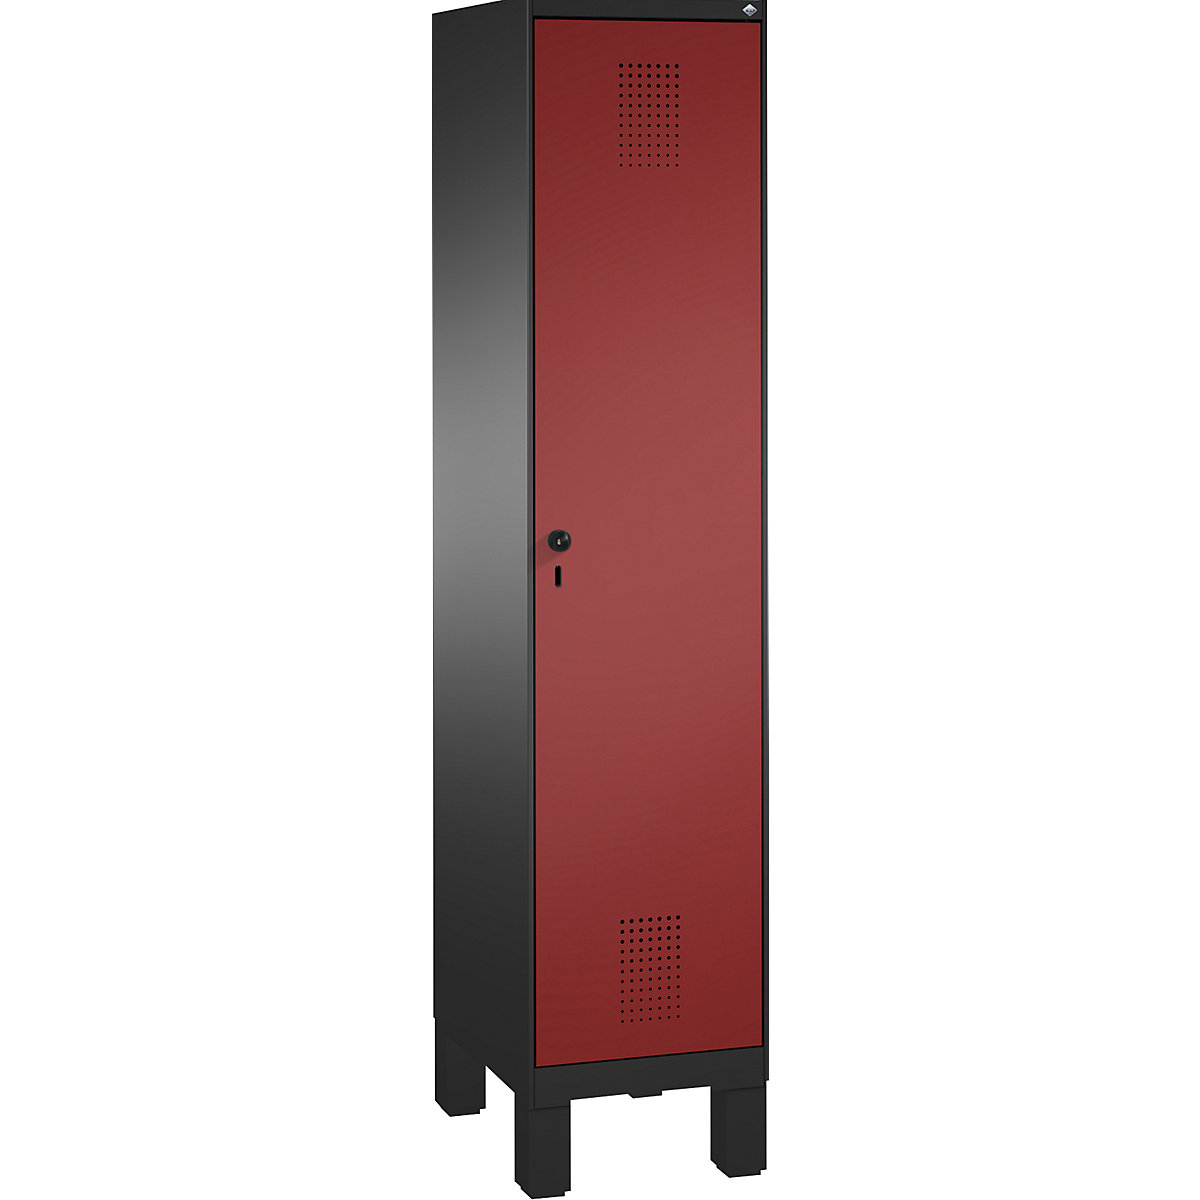 C+P EVOLO Garderobenschrank, mit Füßen, 1 Abteil, Abteilbreite 400 mm, schwarzgrau / rubinrot